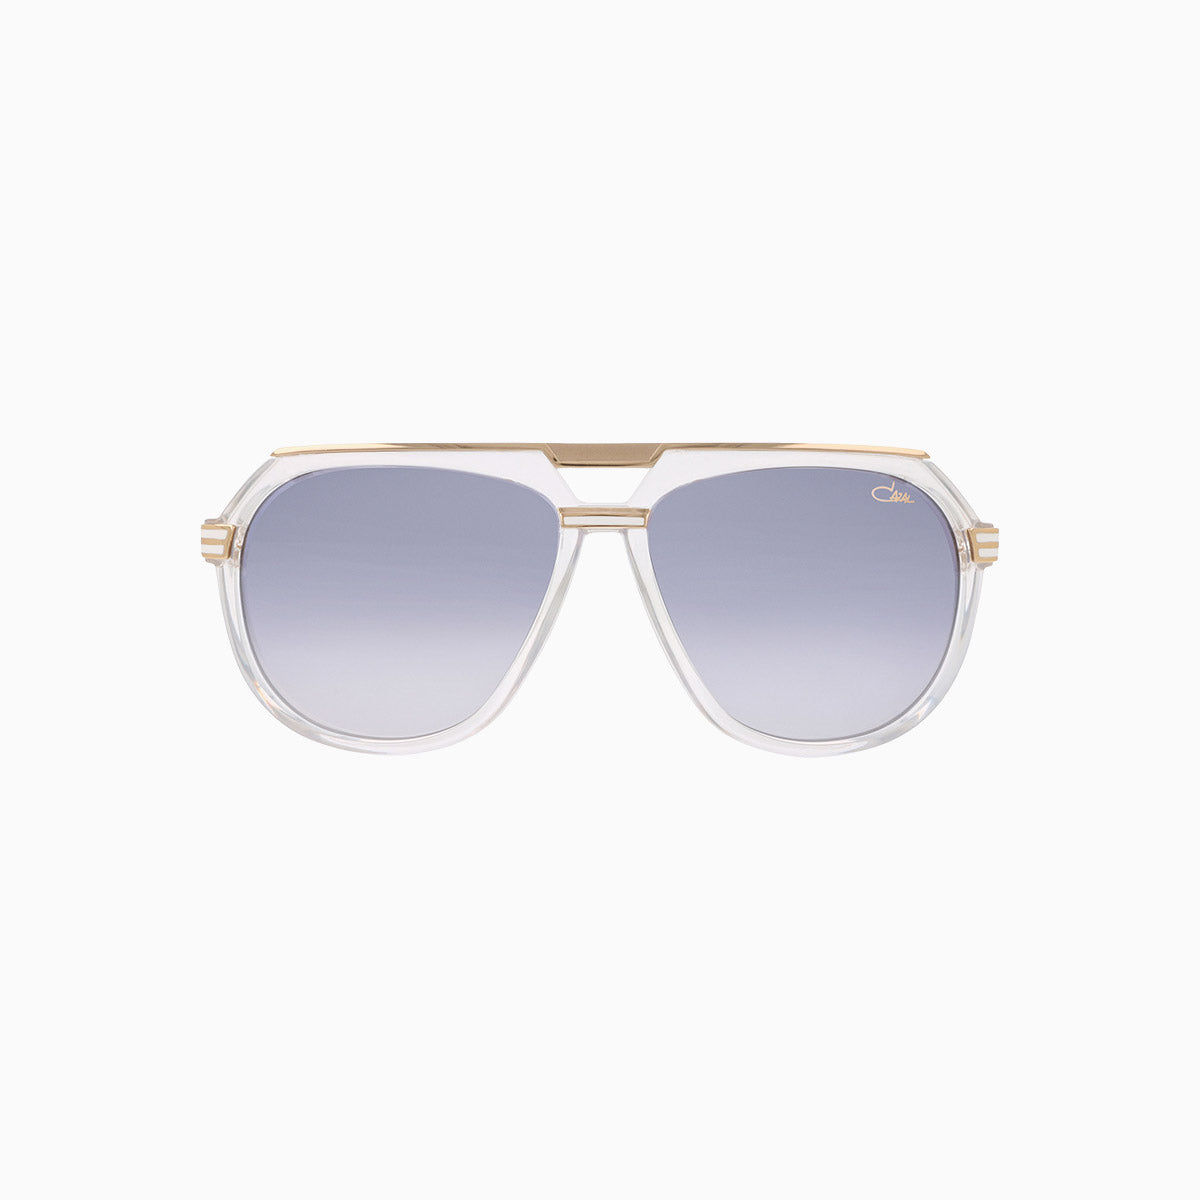 mens-cazal-674-crystal-gold-sunglasses-cazal-674-002